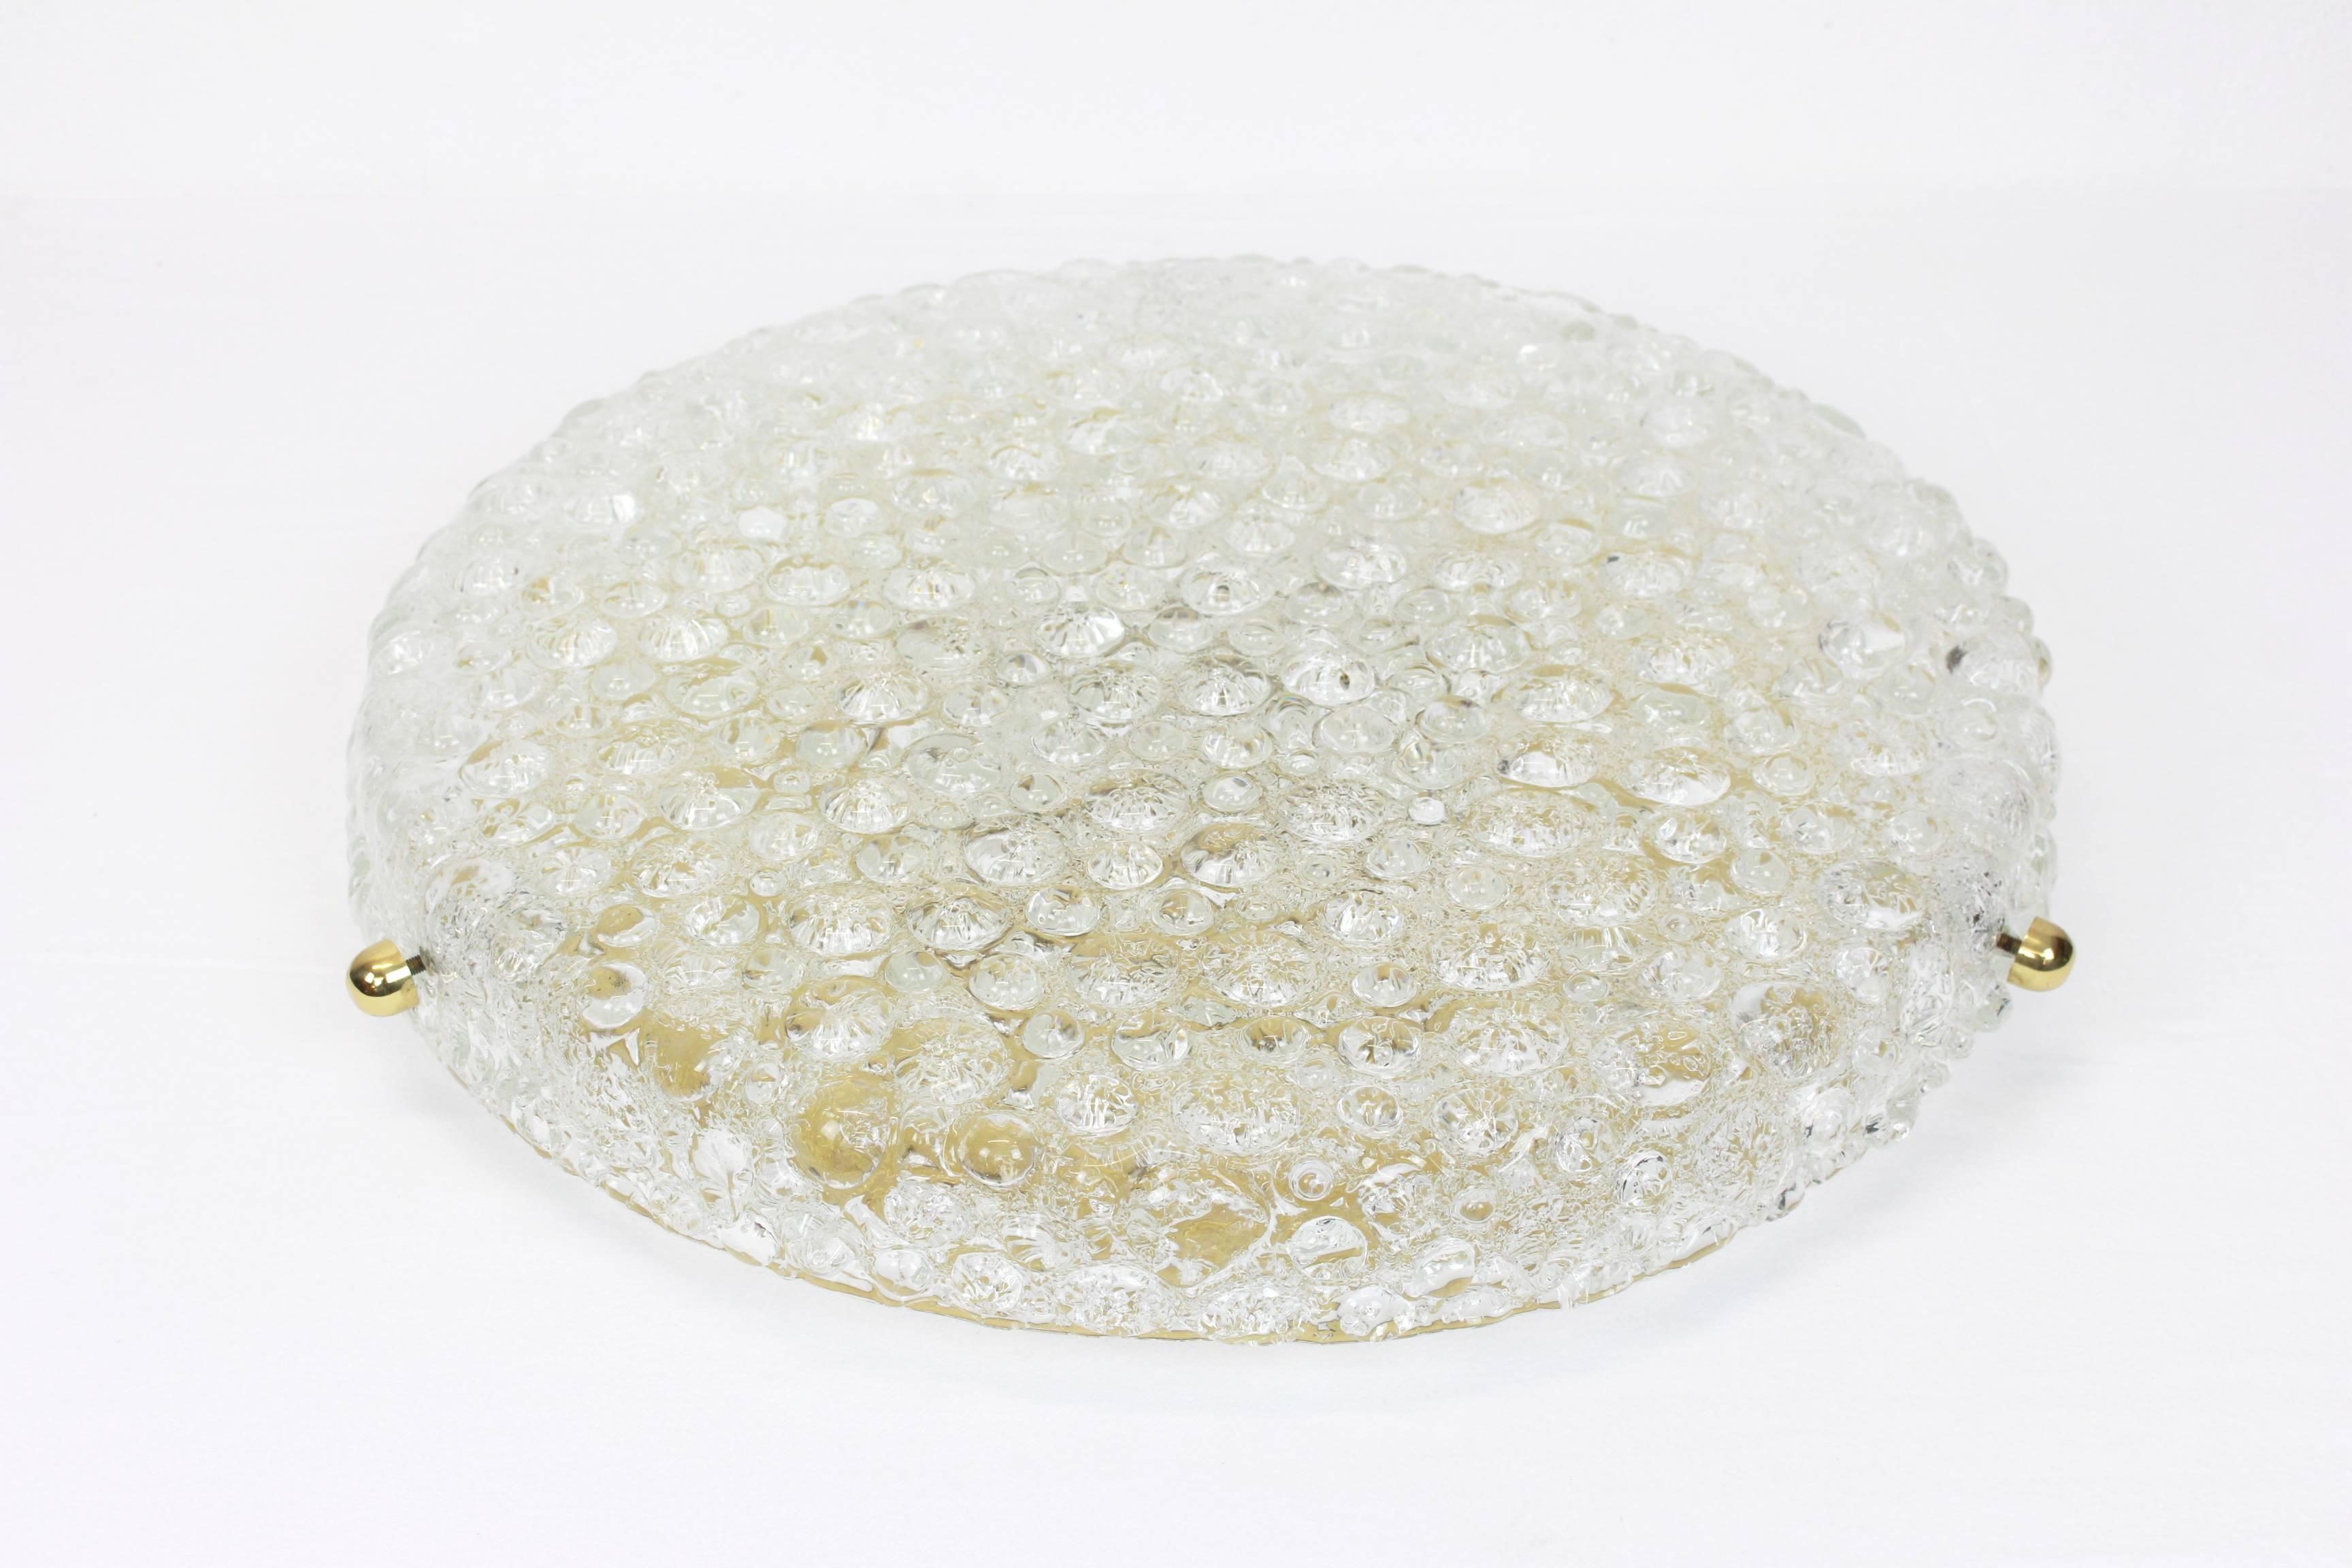 Ein wundervoller runder Eisglashalter von Hillebrand Leuchten, Deutschland, 1970er Jahre.
Dickes, strukturiertes Eisglas auf einer Messingbasis befestigt.

Hochwertig und in sehr gutem Zustand. Gereinigt, gut verkabelt und einsatzbereit.

Die